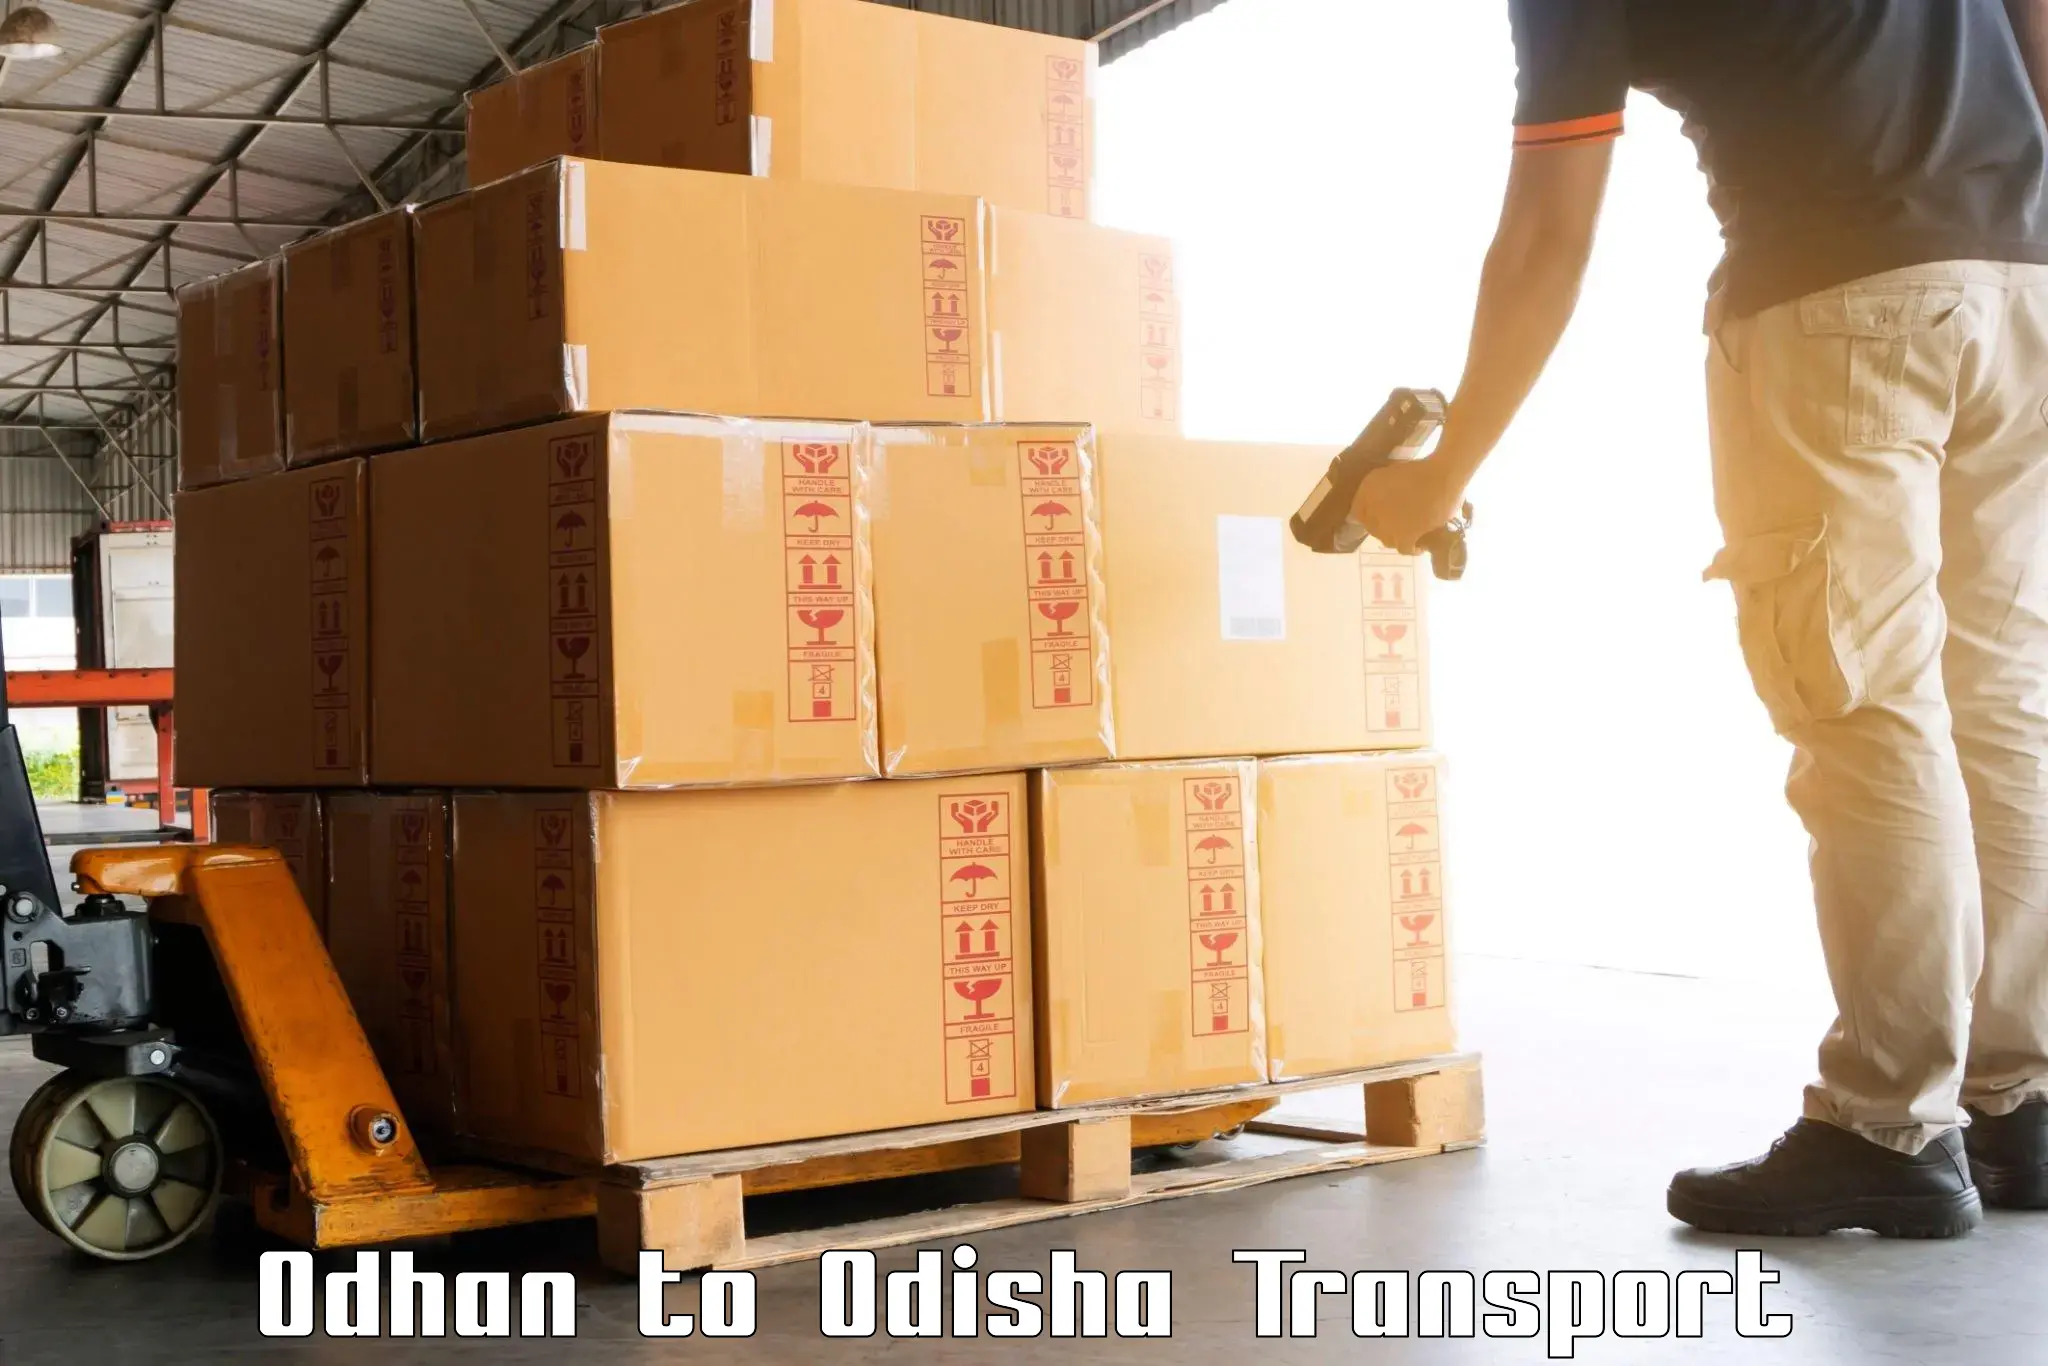 Cargo transportation services Odhan to Siksha O Anusandhan Bhubaneswar